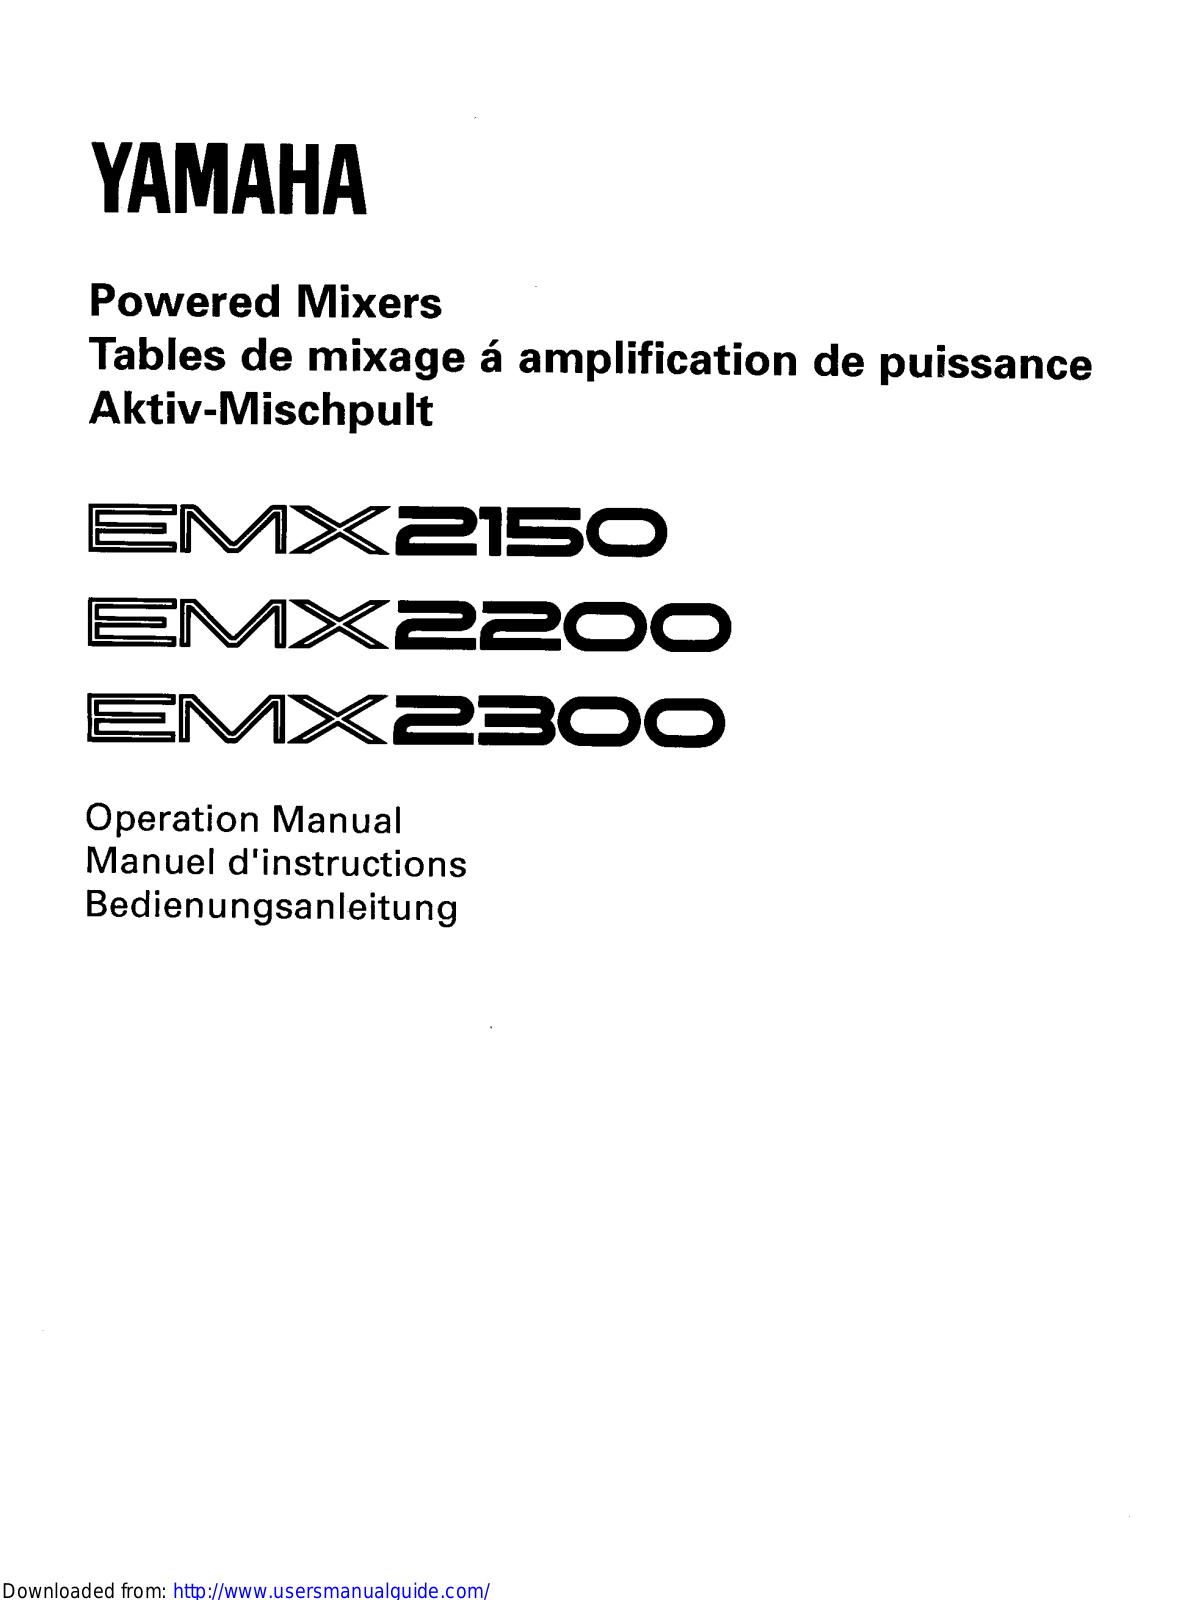 Yamaha Audio EMX2150, EMX2200, EMX2300 User Manual